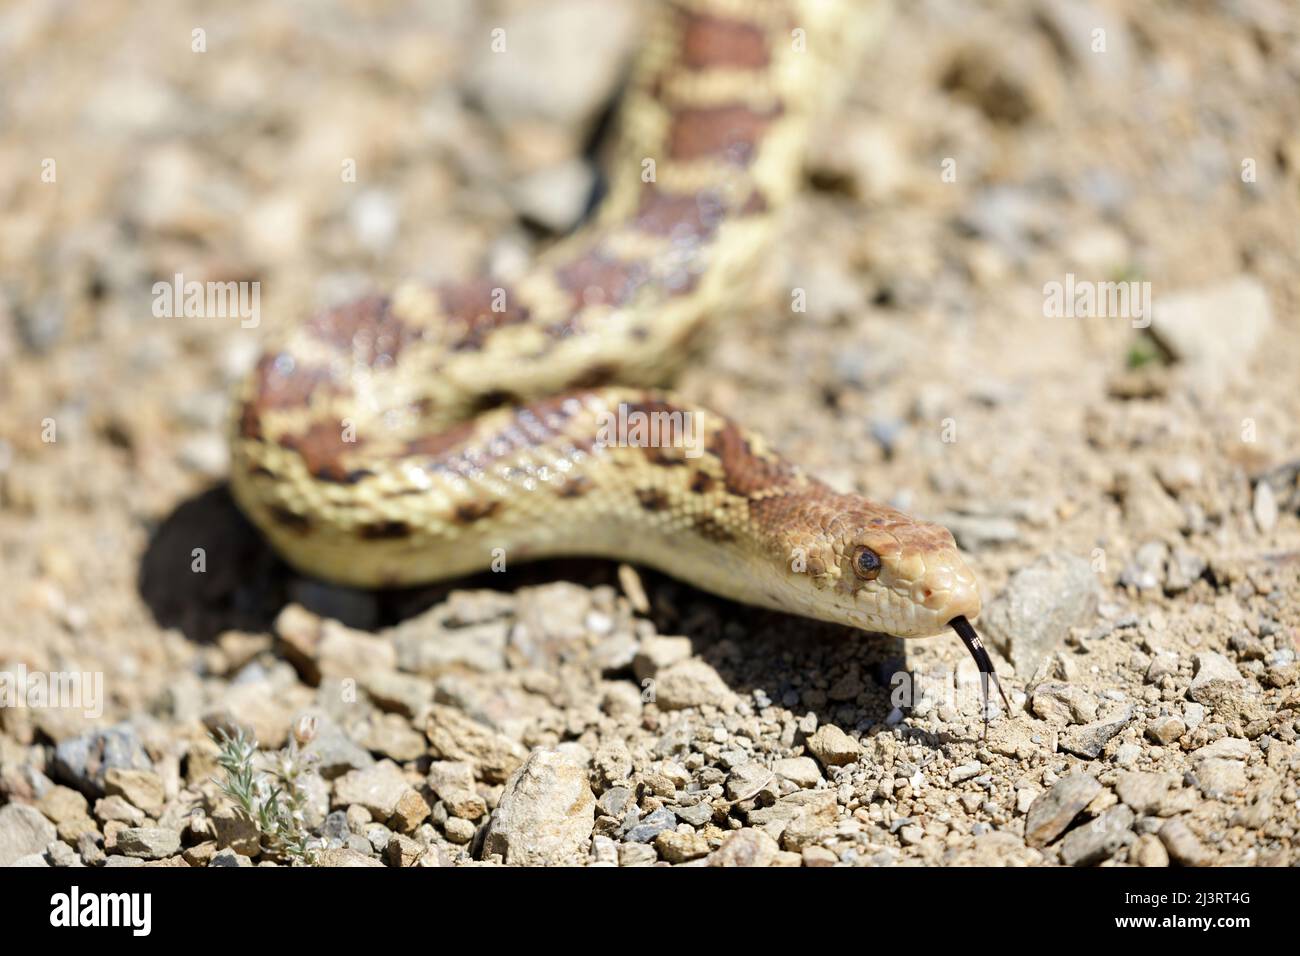 Pacific Gopher Snake Adulti che attacca la lingua. Joseph D Grant Ranch County Park, Santa Clara County, California, USA. Foto Stock